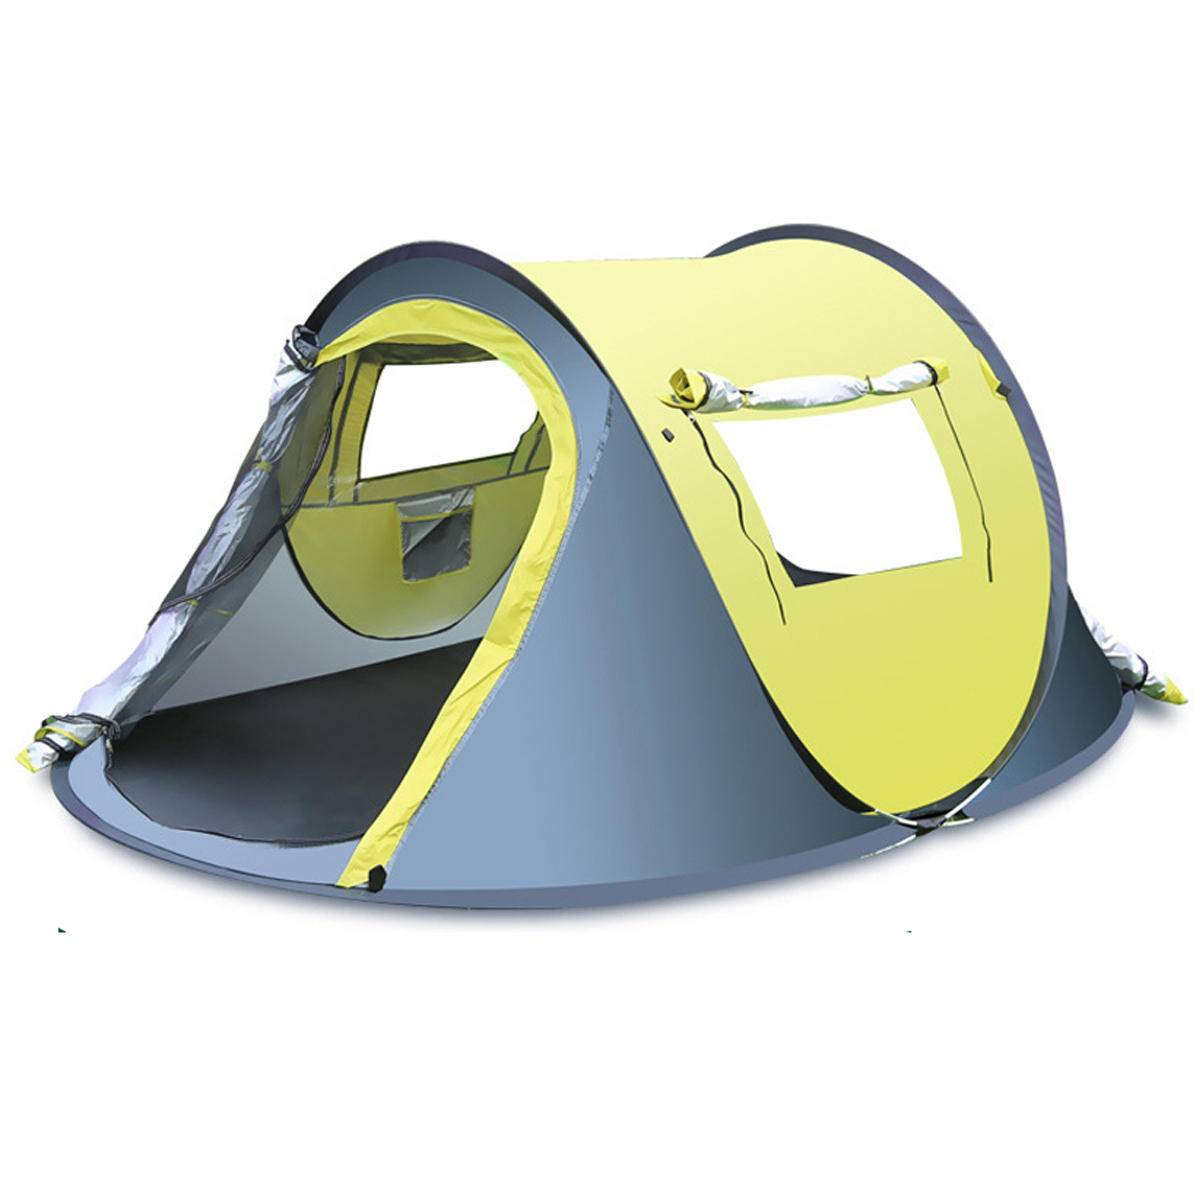 屋外用の3〜4人用のクイック自動オープンテント、防水防雨、日除けシェルターキャンプハイキングに最適。